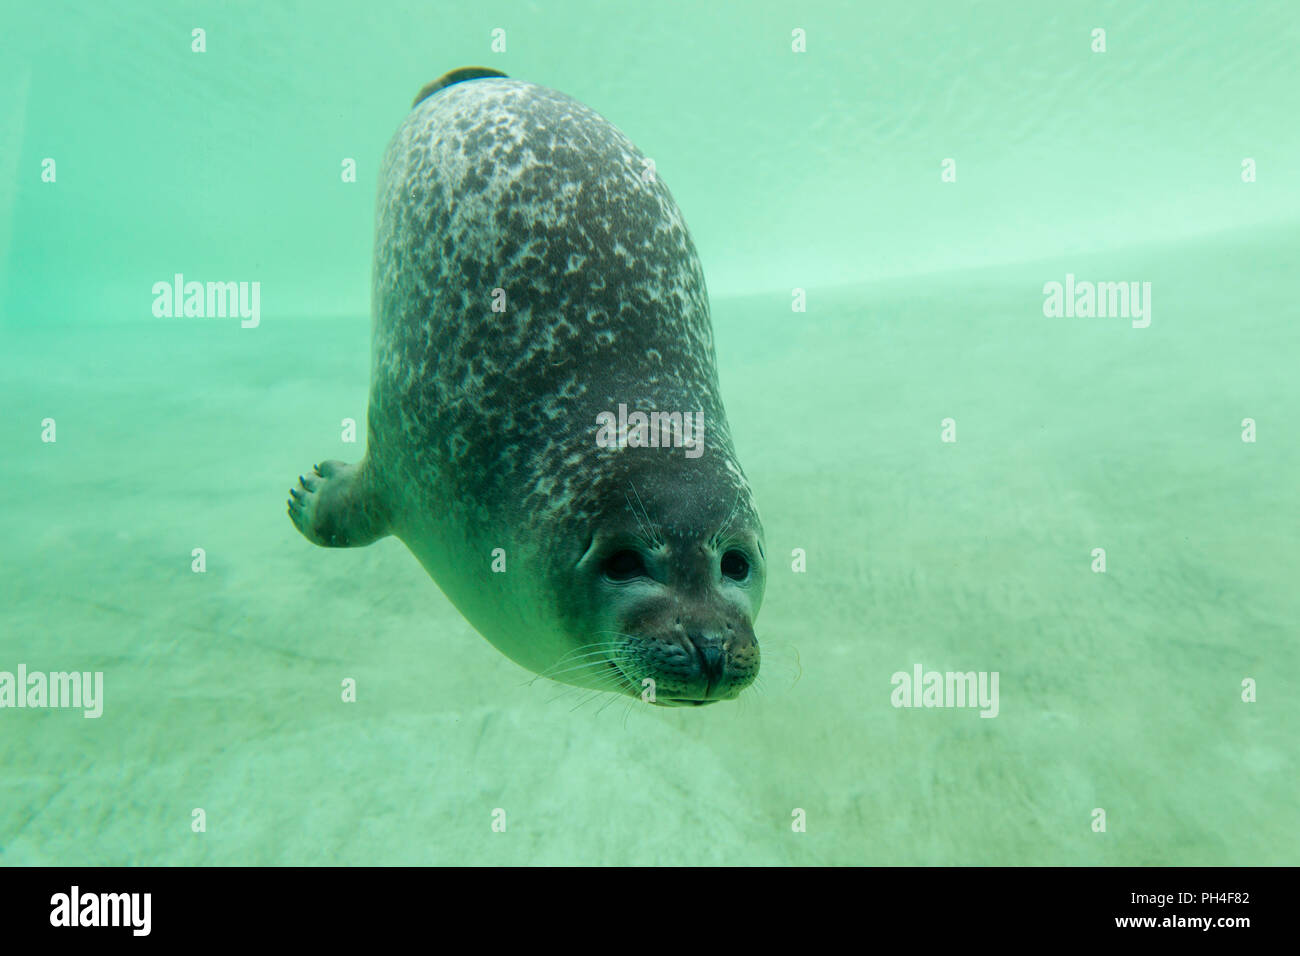 Phoque commun, le phoque commun (Phoca vitulina) sous l'eau dans un bassin. Centre d'étanchéité Friedrichskoog, Schleswig-Holstein, Allemagne Banque D'Images